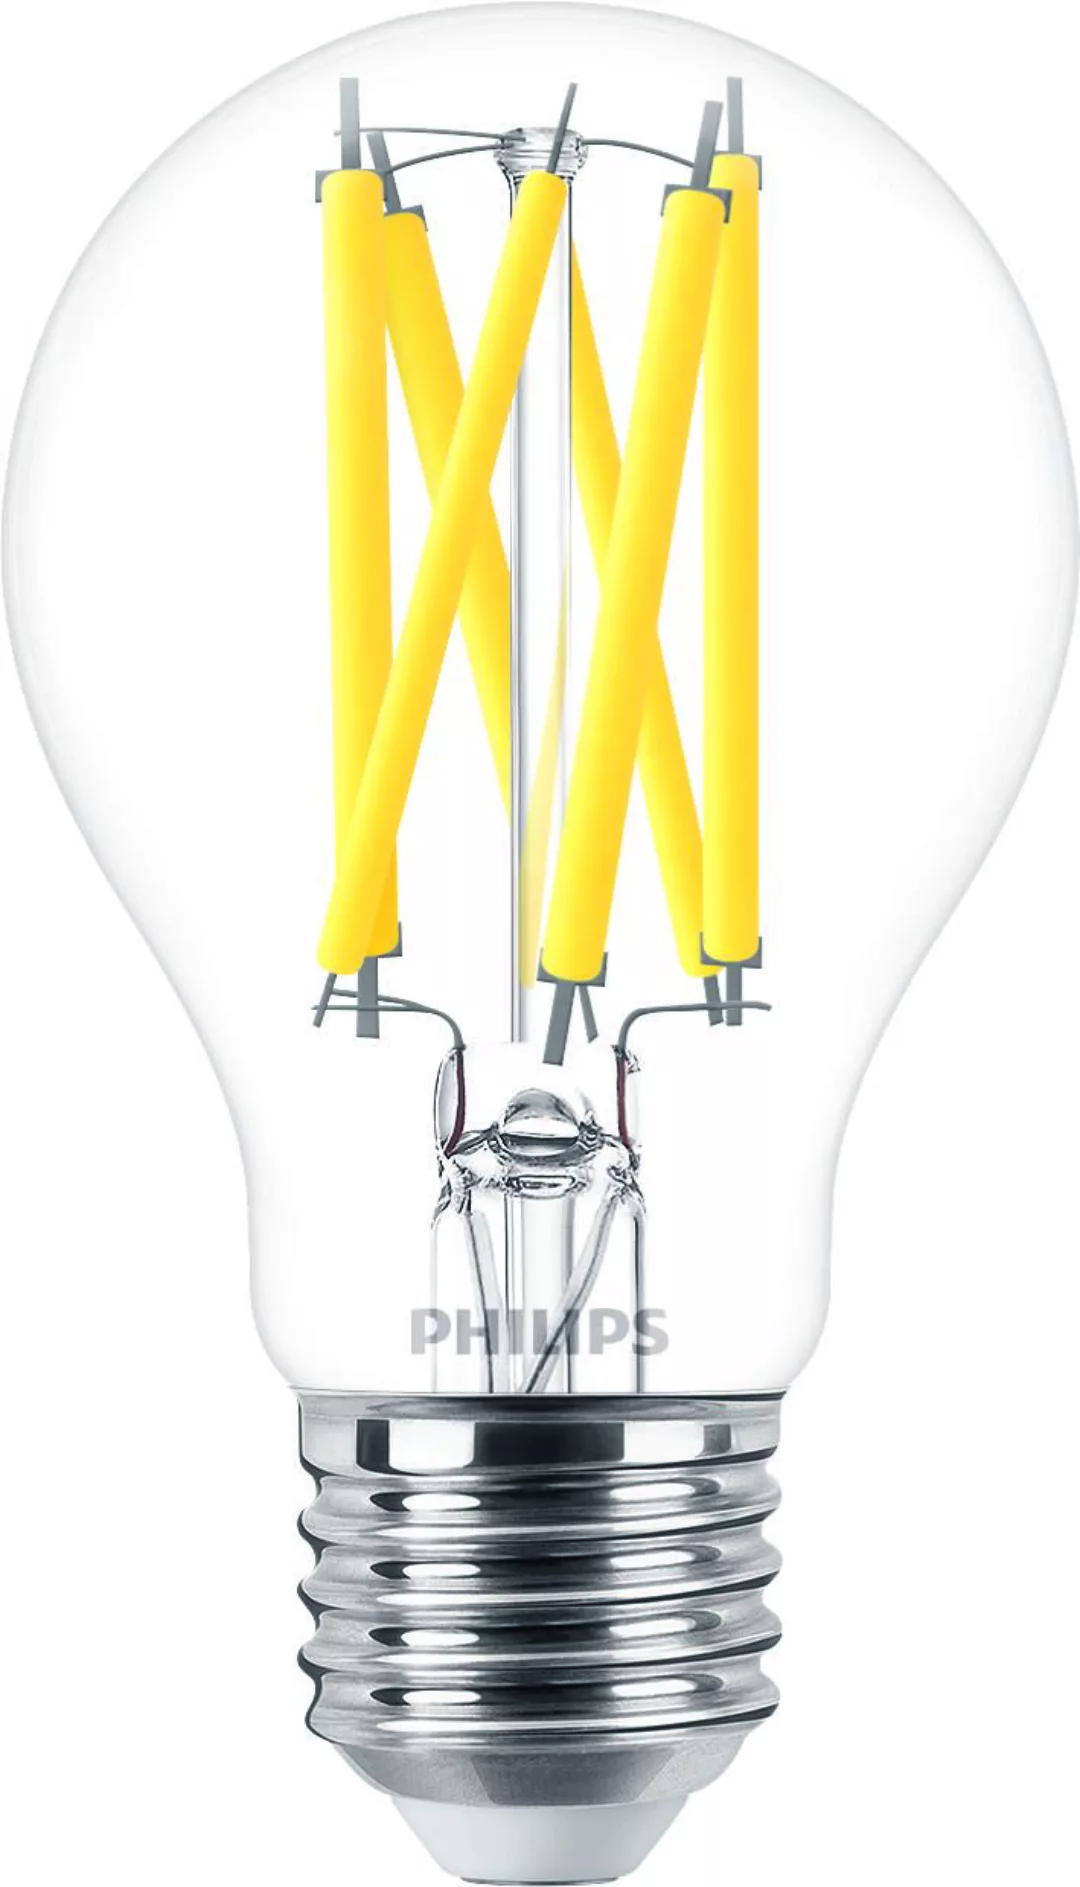 Philips Lighting LED-Lampe E27 927, DimTone MASLEDBulb #44977000 günstig online kaufen